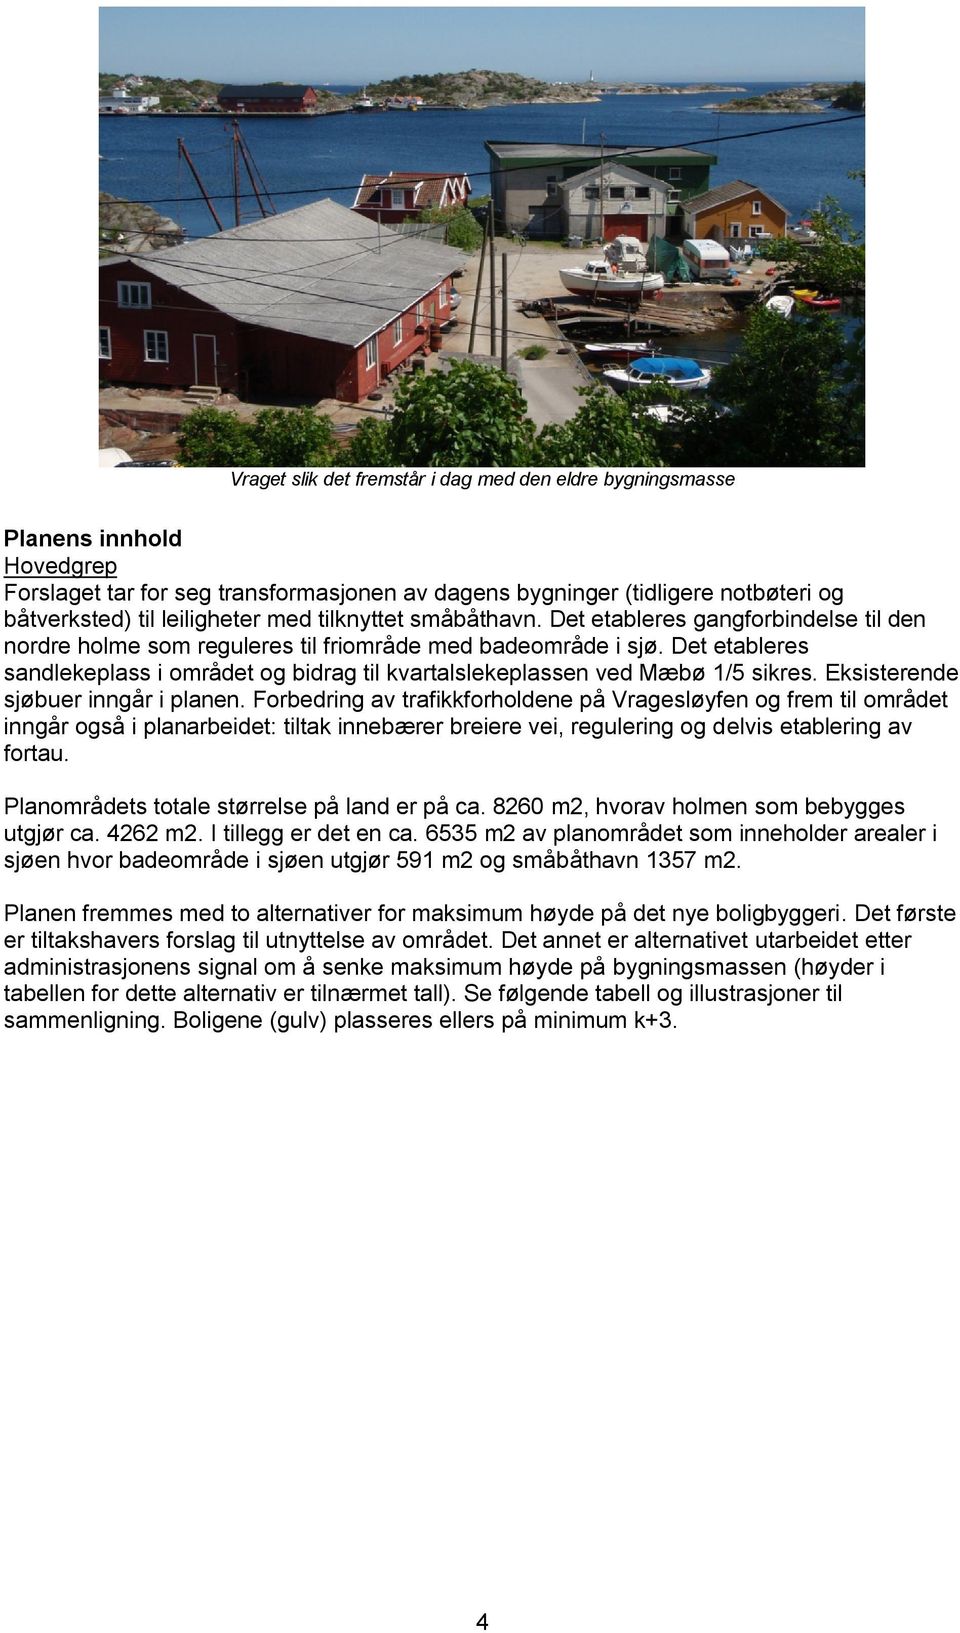 Det etableres sandlekeplass i området og bidrag til kvartalslekeplassen ved Mæbø 1/5 sikres. Eksisterende sjøbuer inngår i planen.